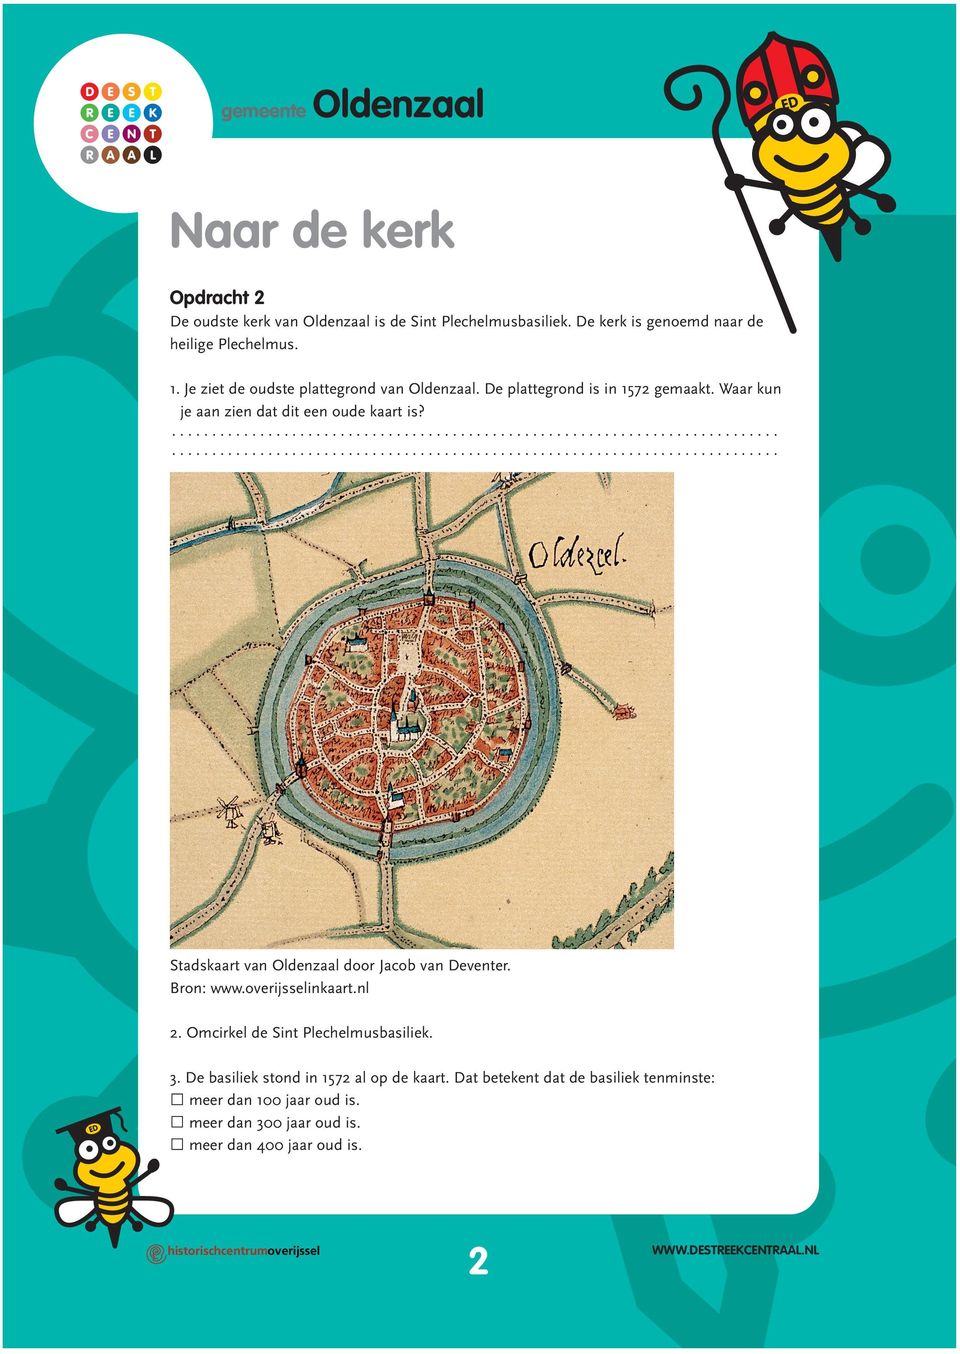 Waar kun je aan zien dat dit een oude kaart is? Stadskaart van Oldenzaal door Jacob van Deventer. Bron: www.overijsselinkaart.nl 2.